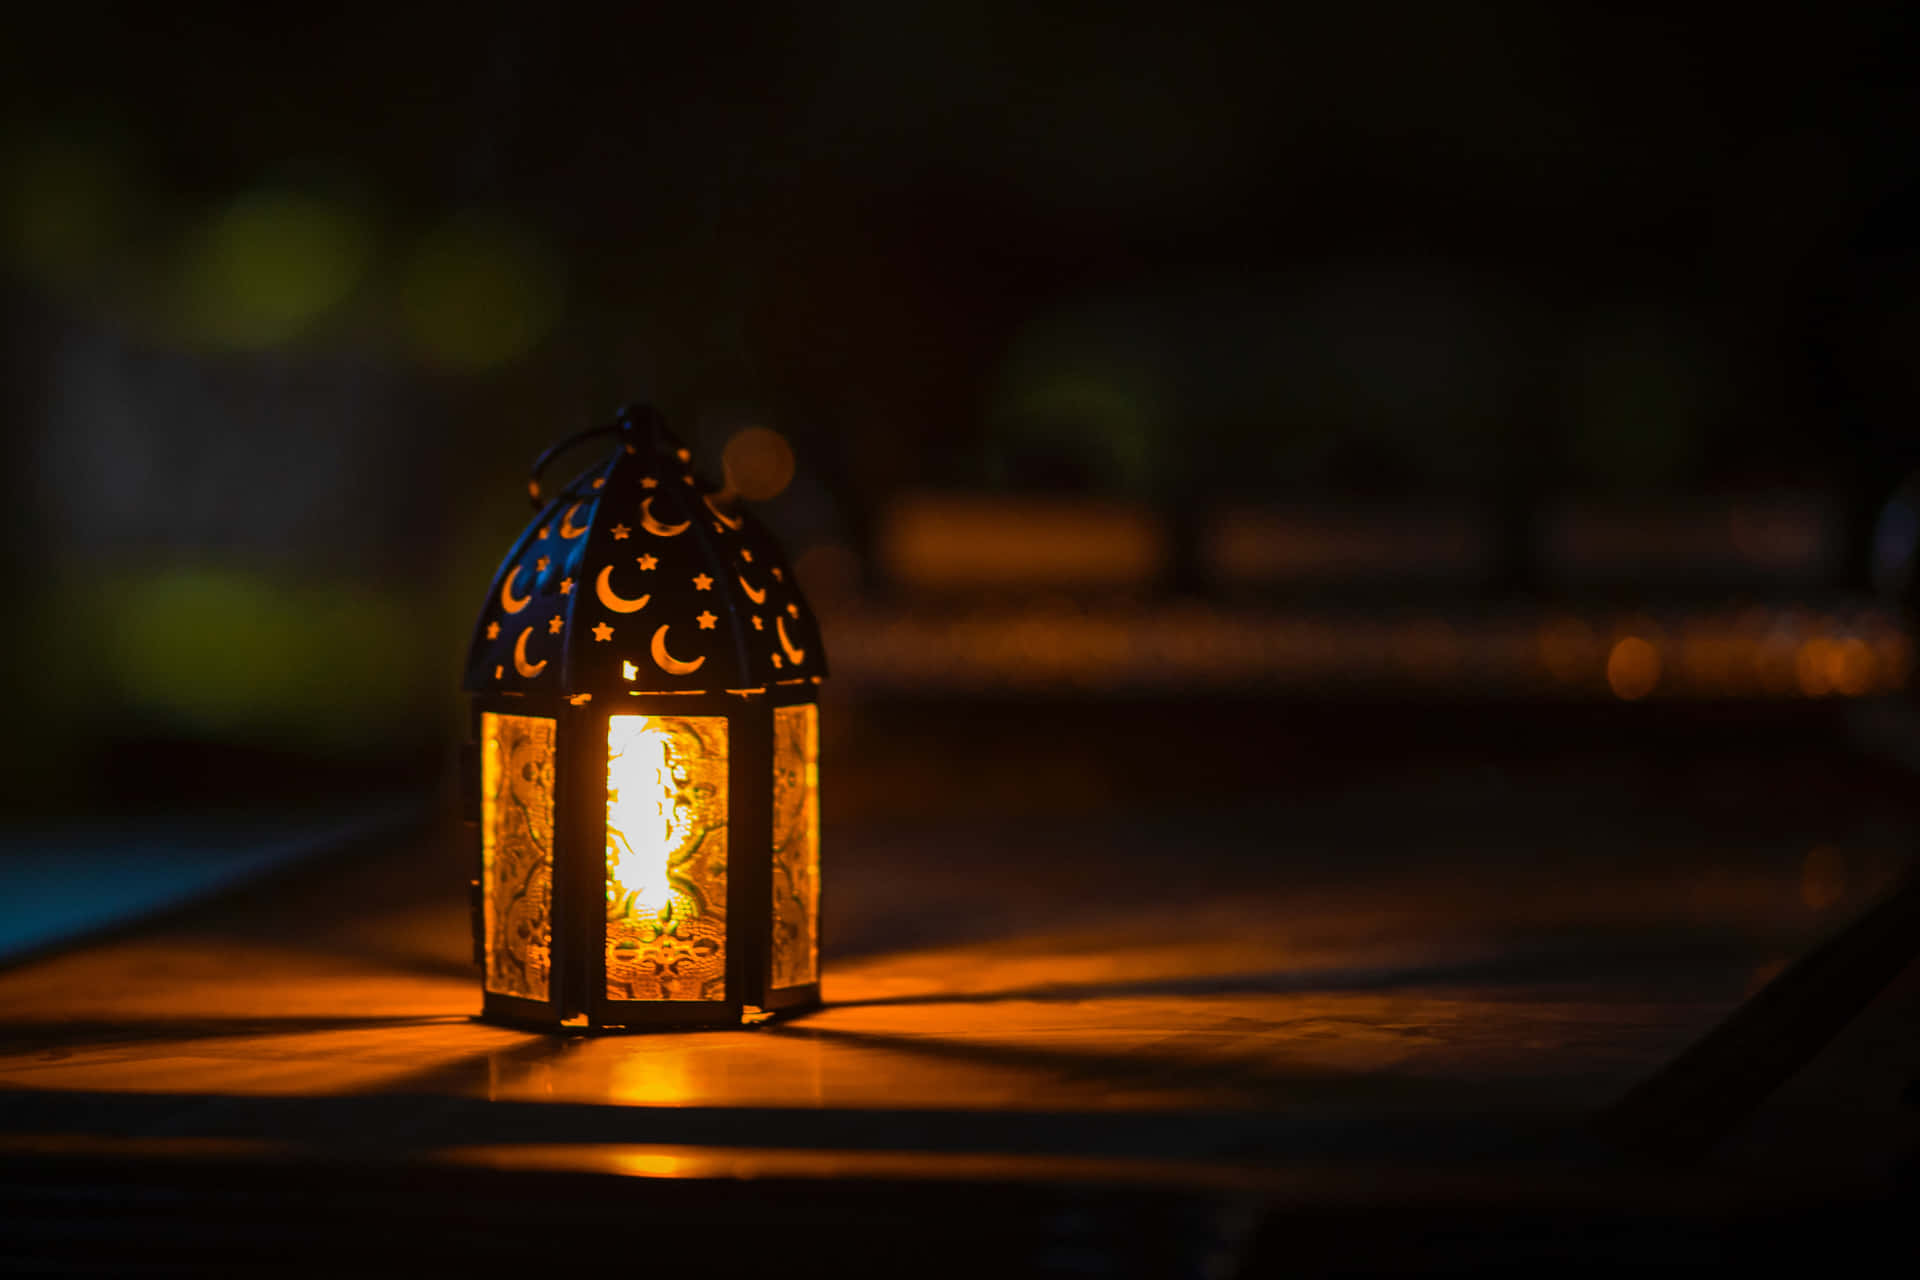 Enchanting Lantern Illuminating the Night